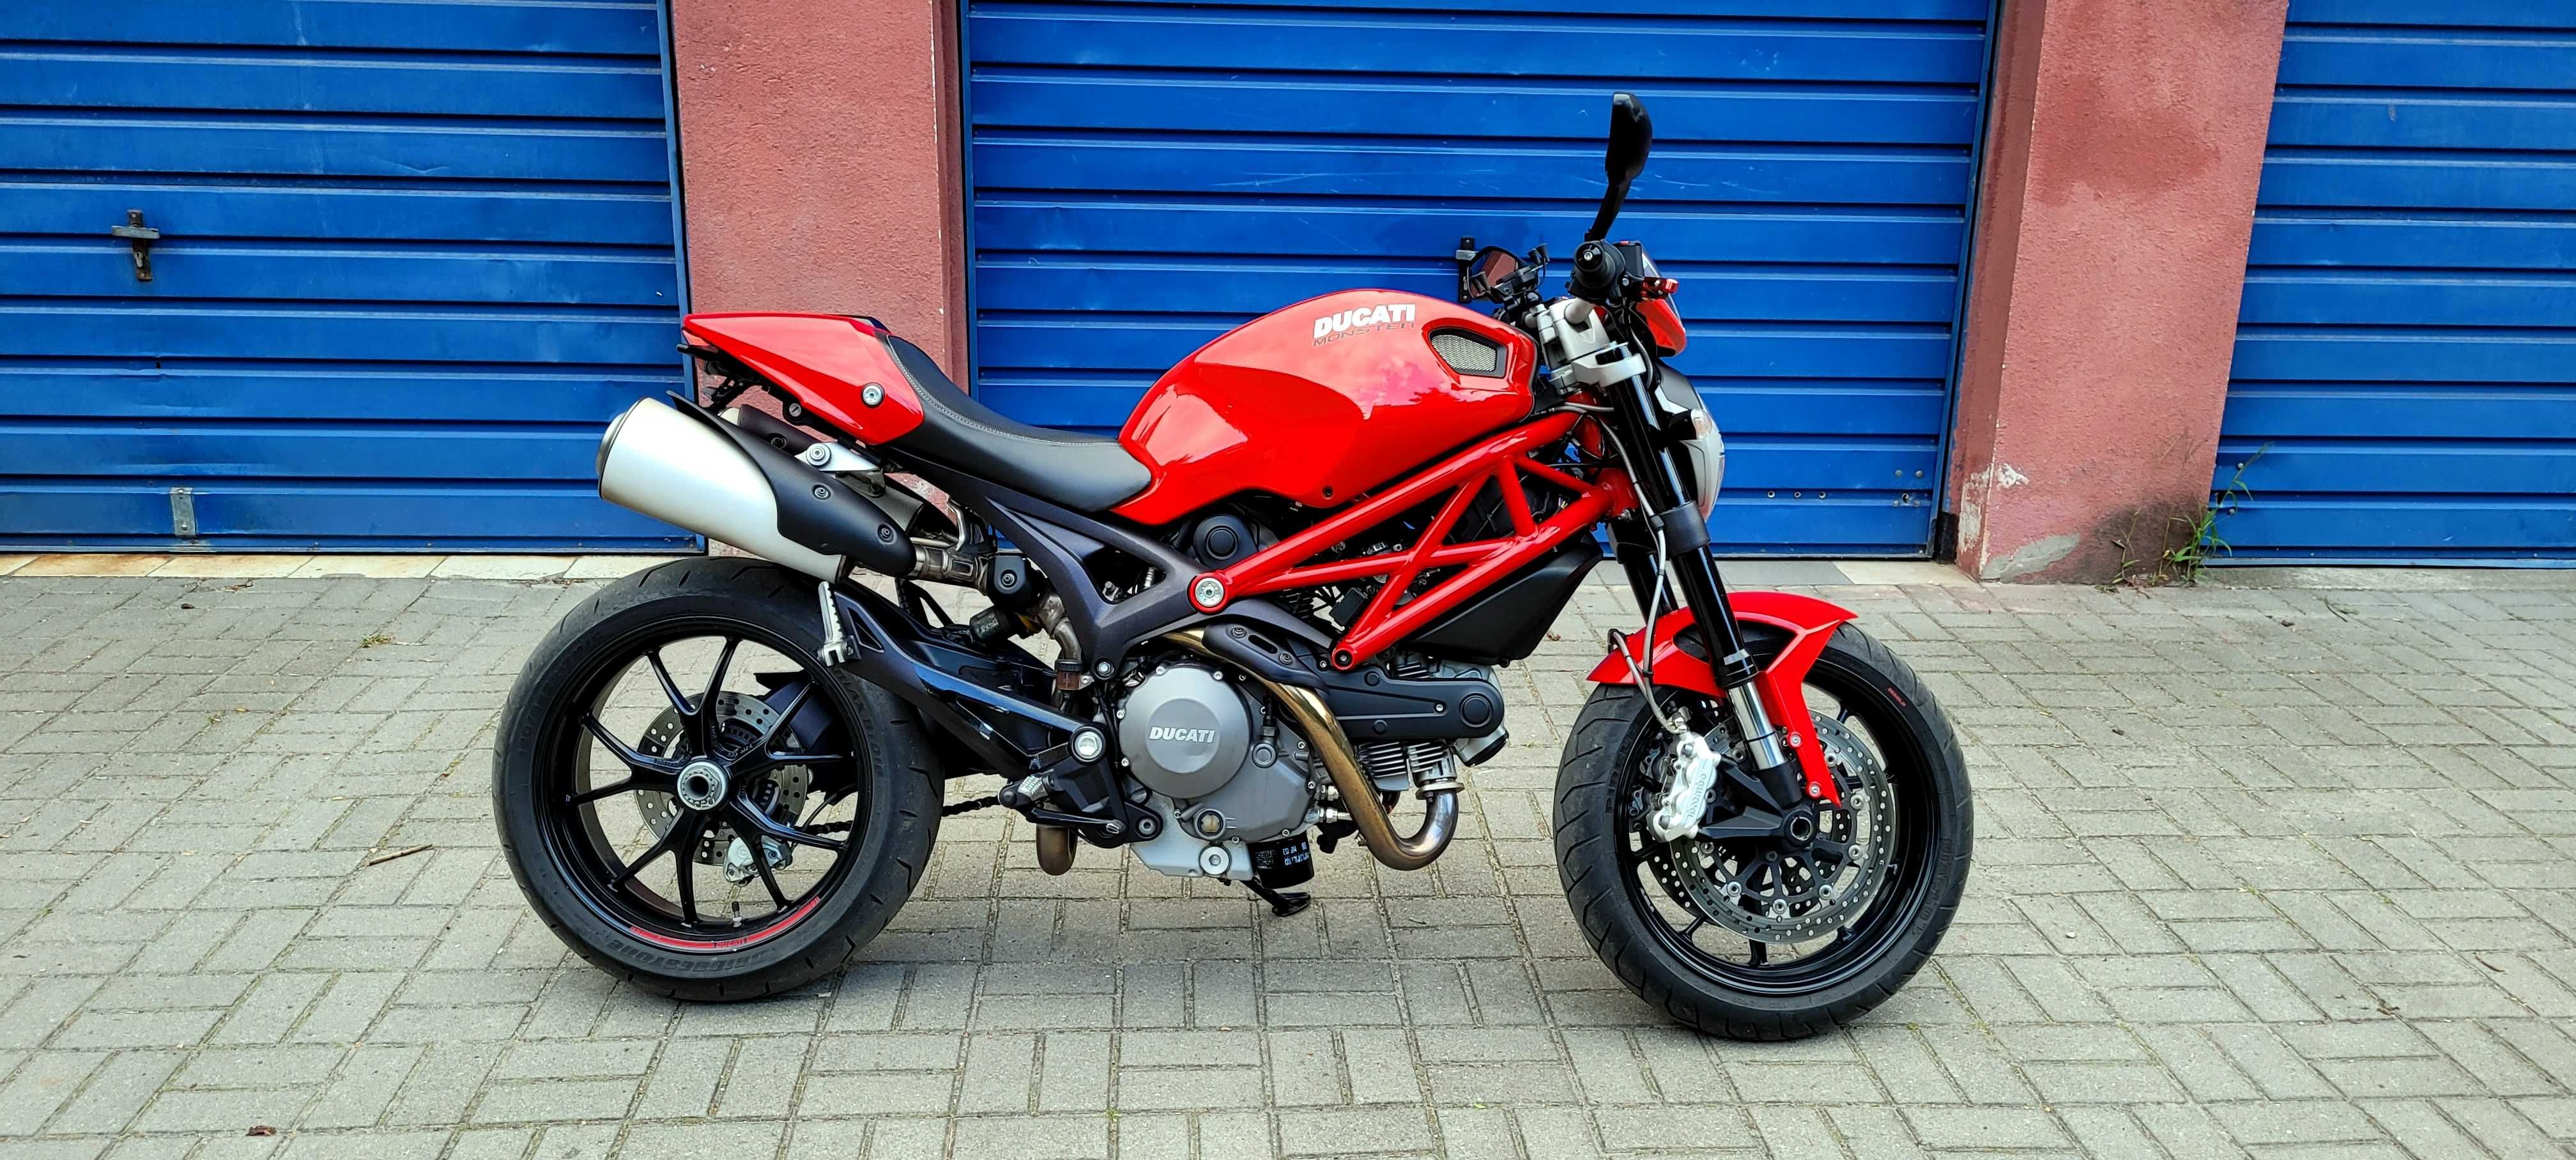 Ducati Monster 796 ABS 2013 do moi keng - 2